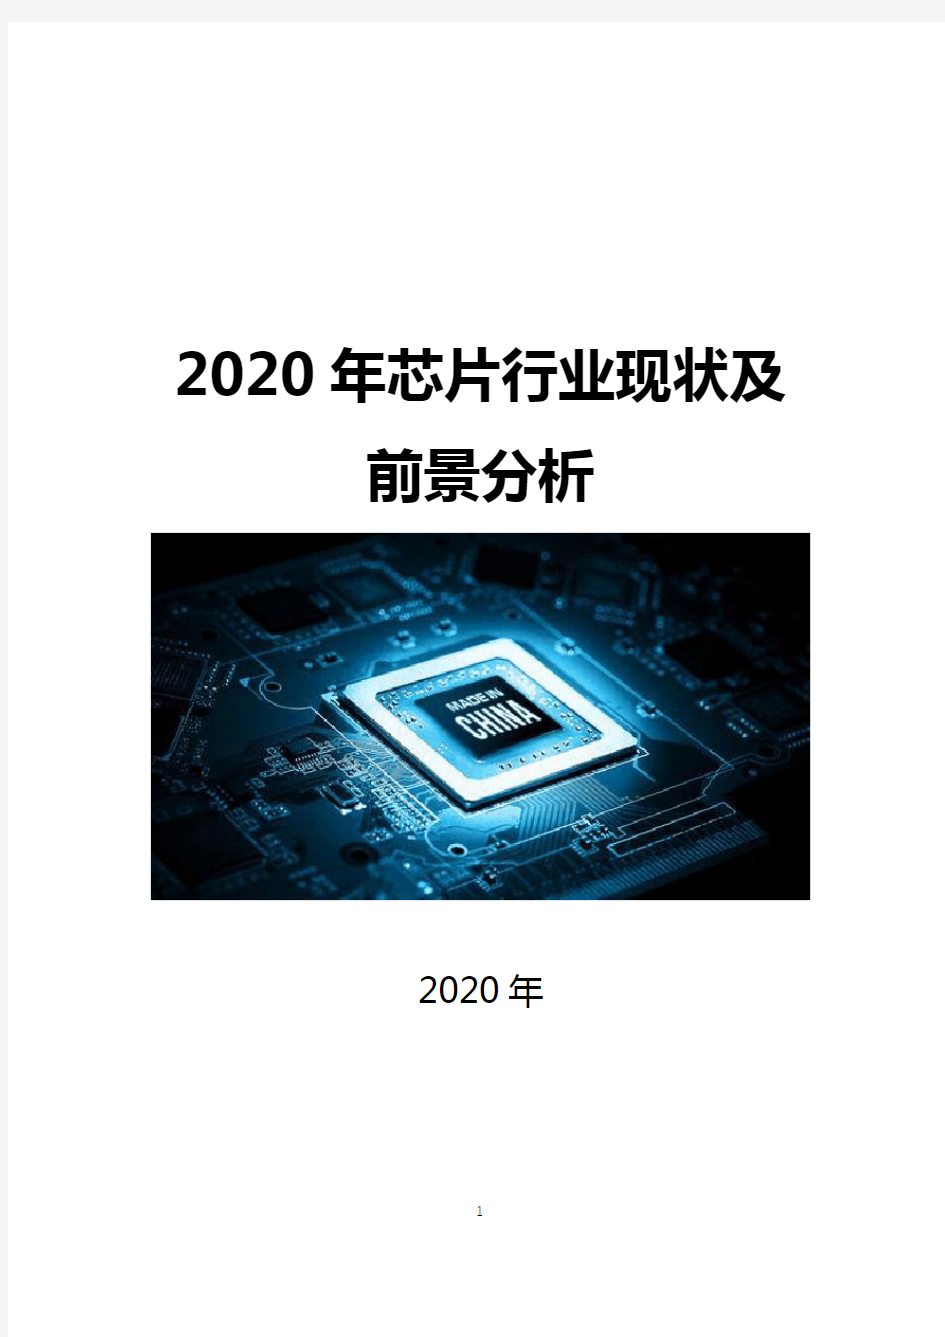 2020年芯片行业现状及前景分析